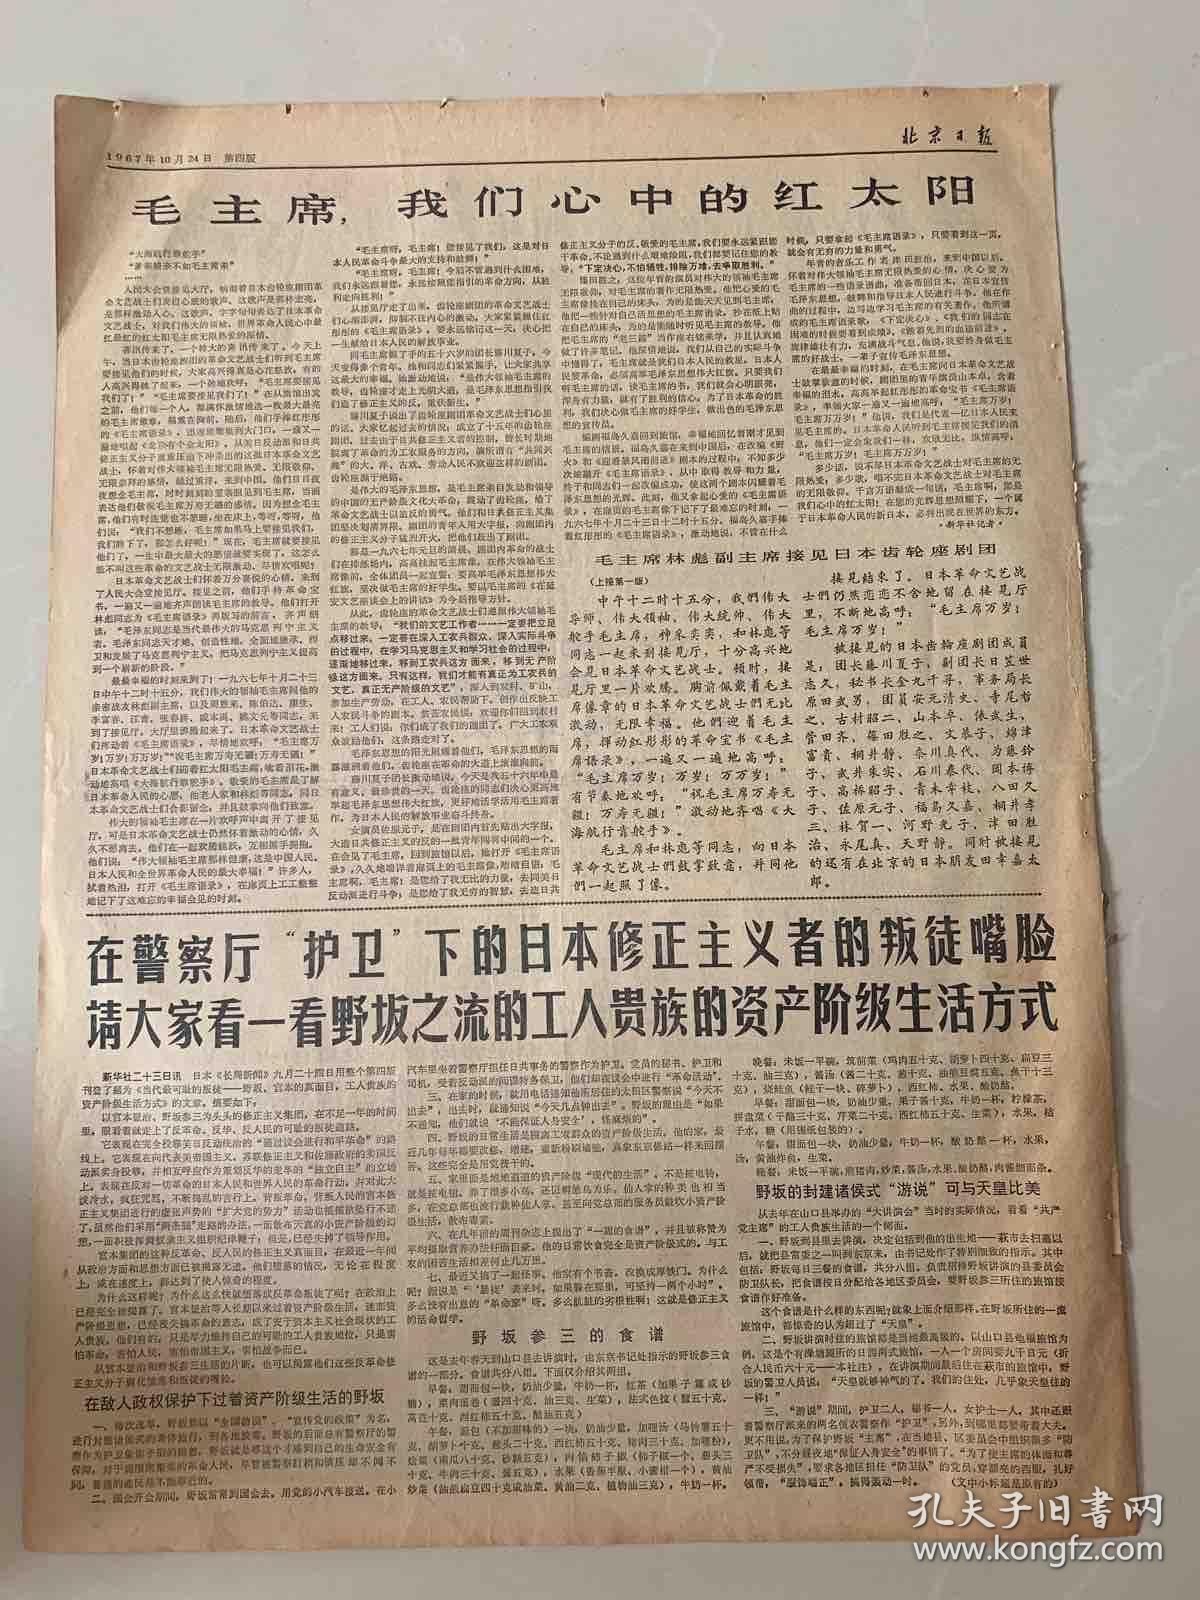 报纸北京日报1967年10月24 日(4开四版）毛主席林副主席接见达达赫总统；毛主席林副主席接见齿轮座剧团。